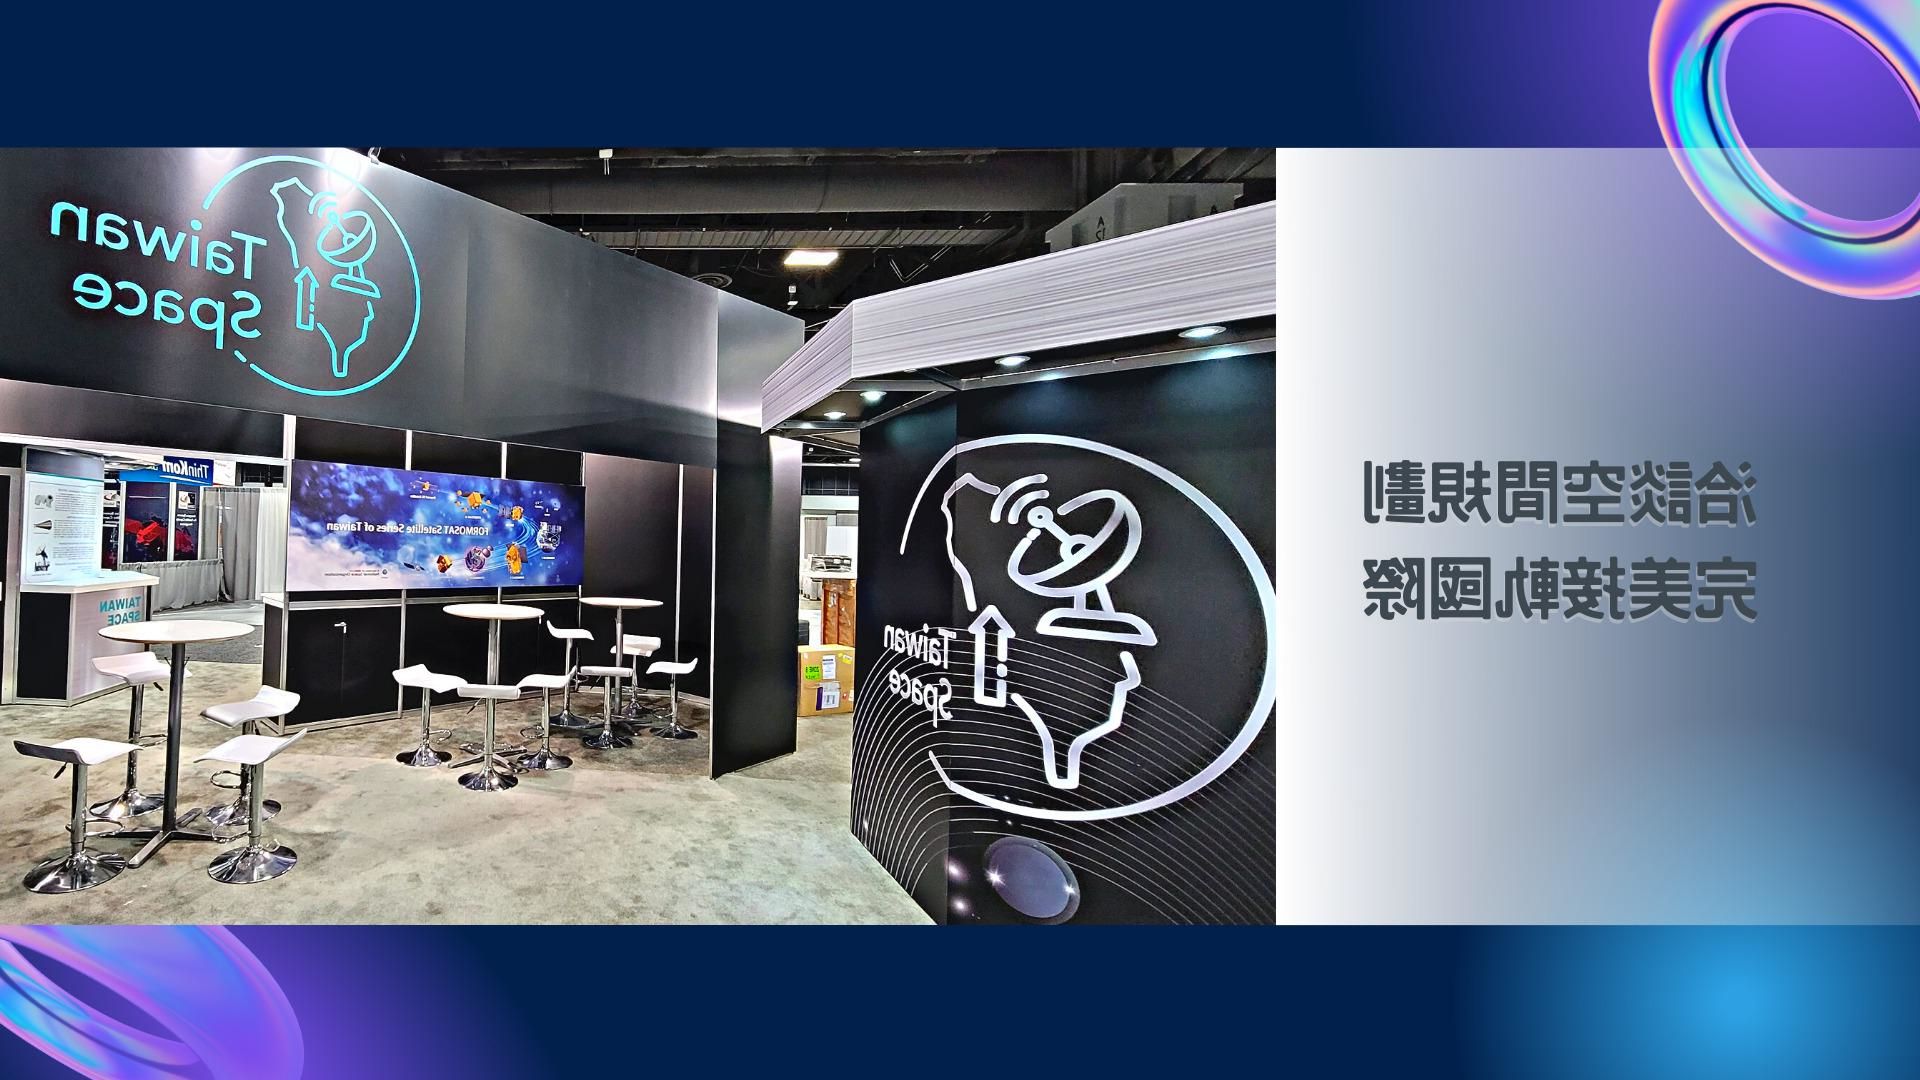 王一设计, 展场设计, 摊位设计, TaiwanSpace台湾形象馆, ITRI工研院, Satellite2022, 美国卫星通讯展